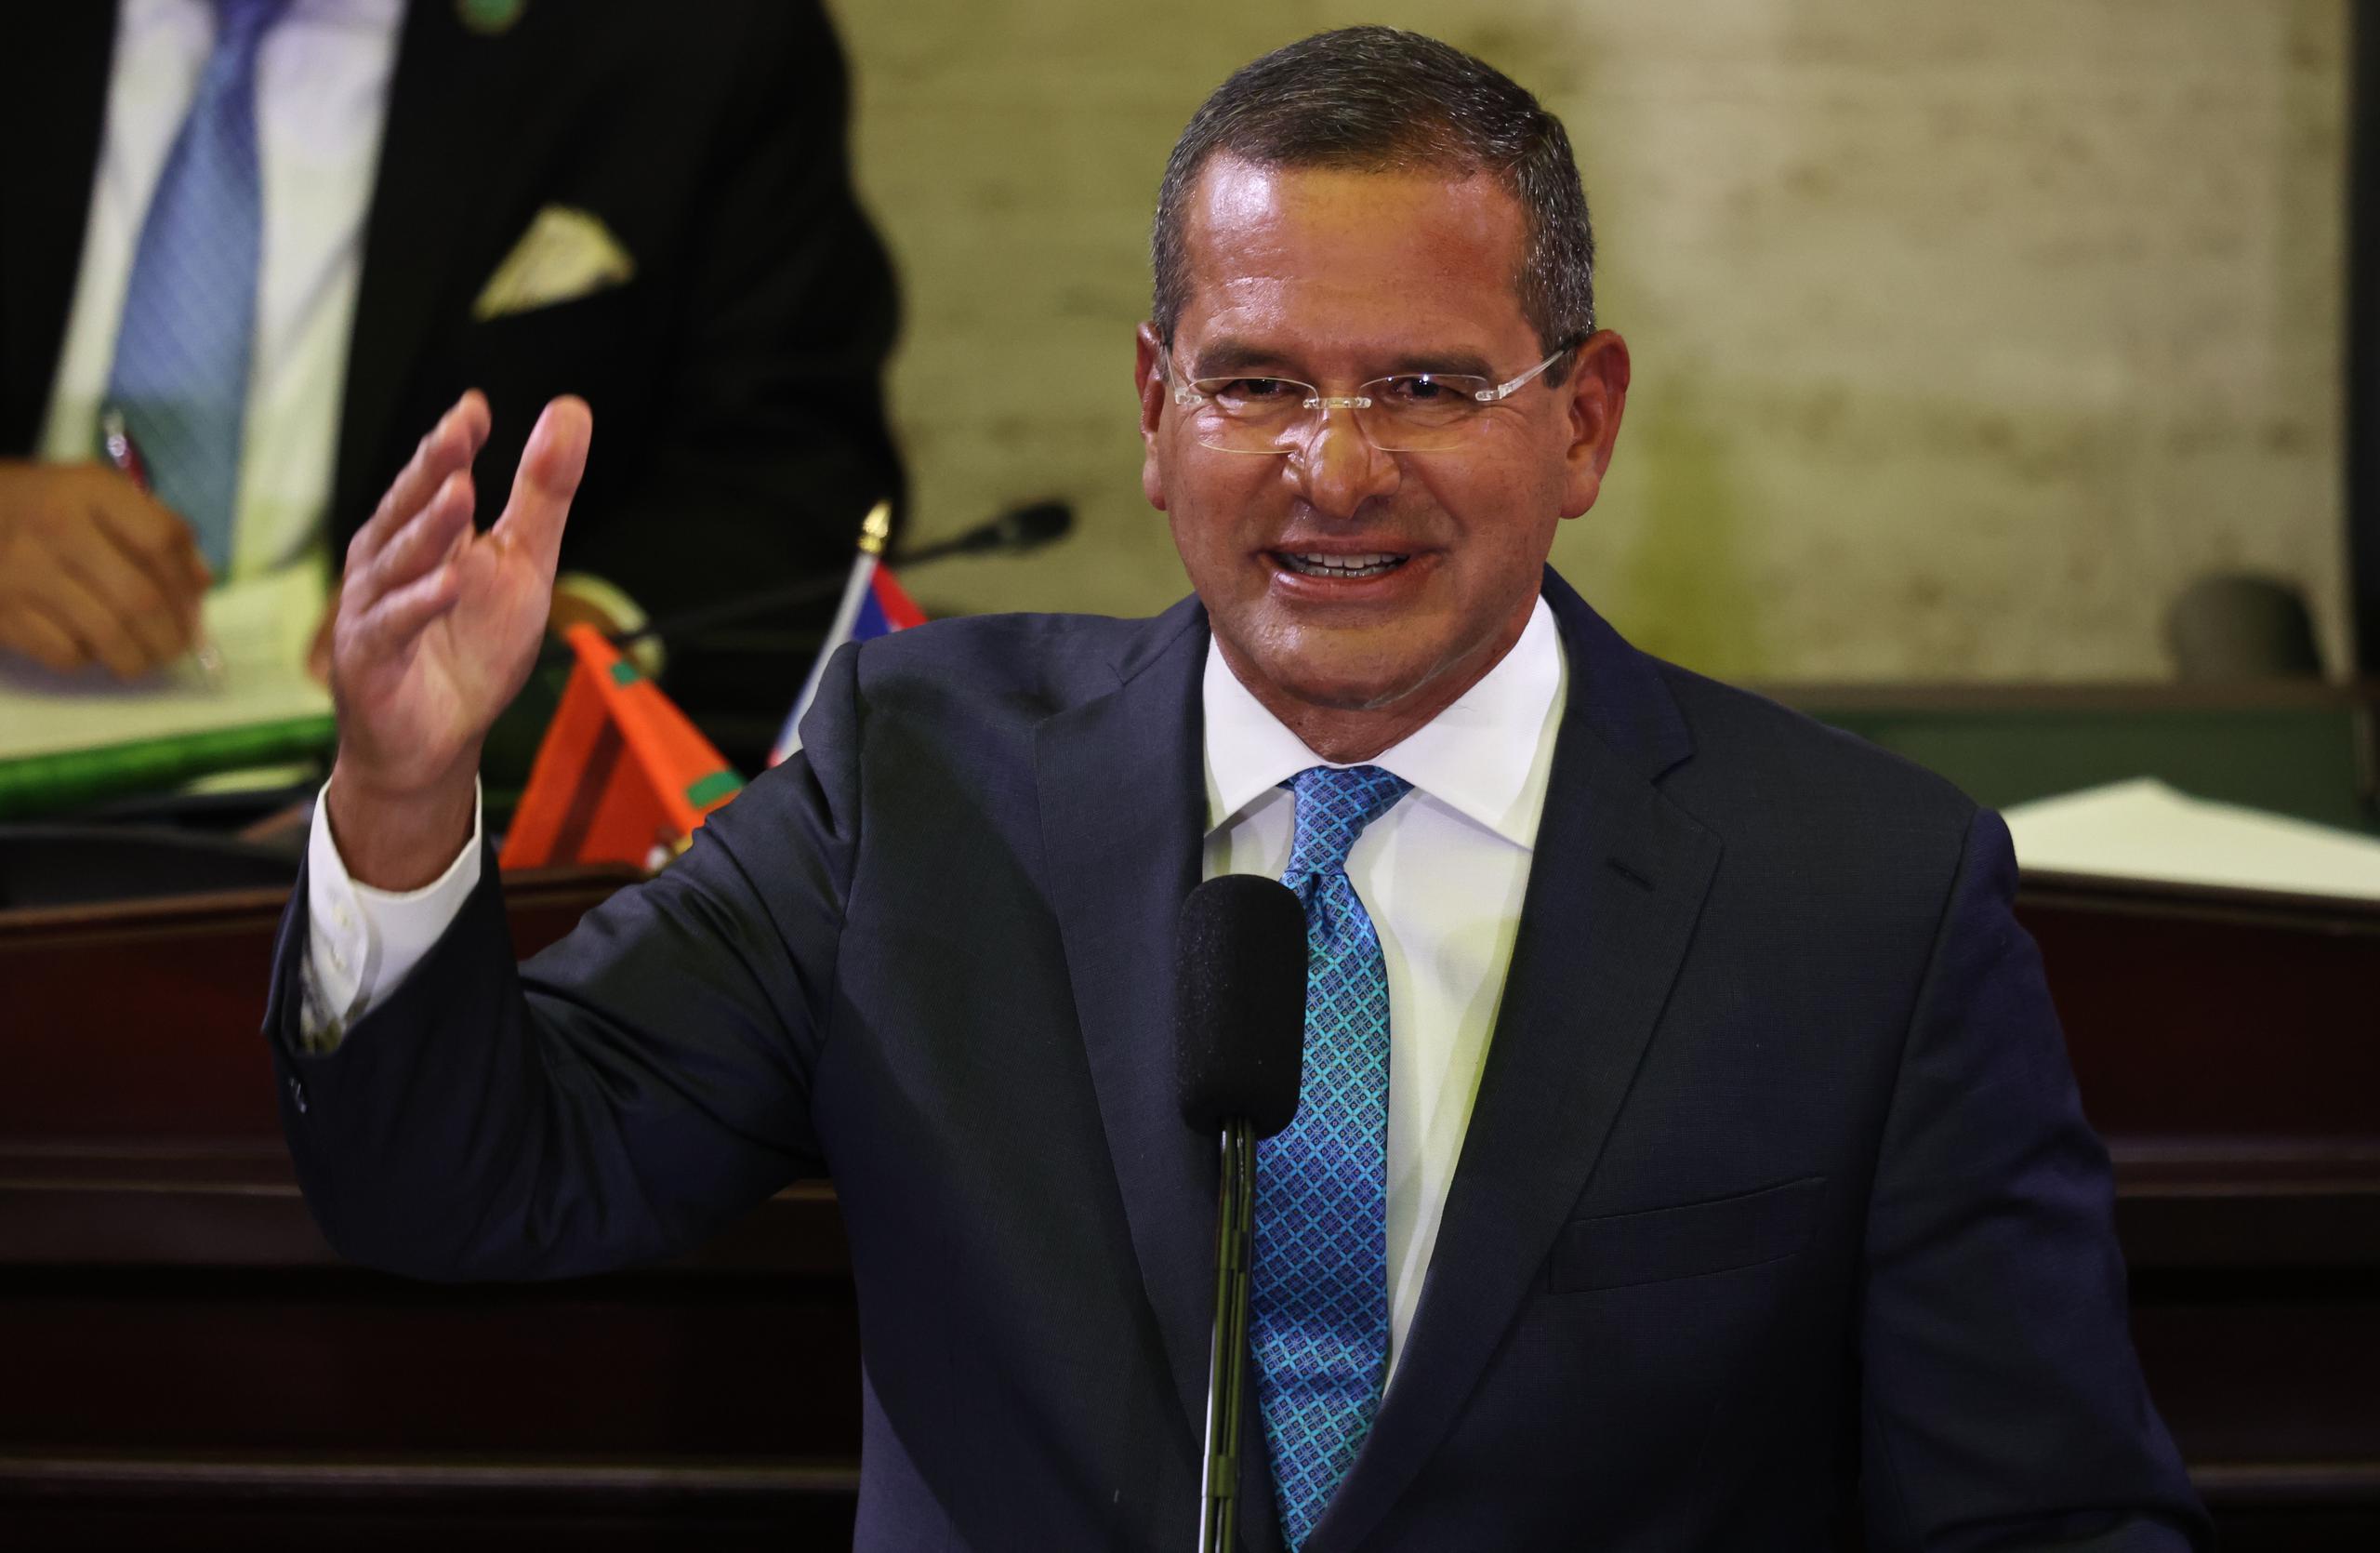 El gobernador Pedro Pierluisi ganó casi $72,000 para el año contributivo 2022, informó la Oficina de Prensa de La Fortaleza.